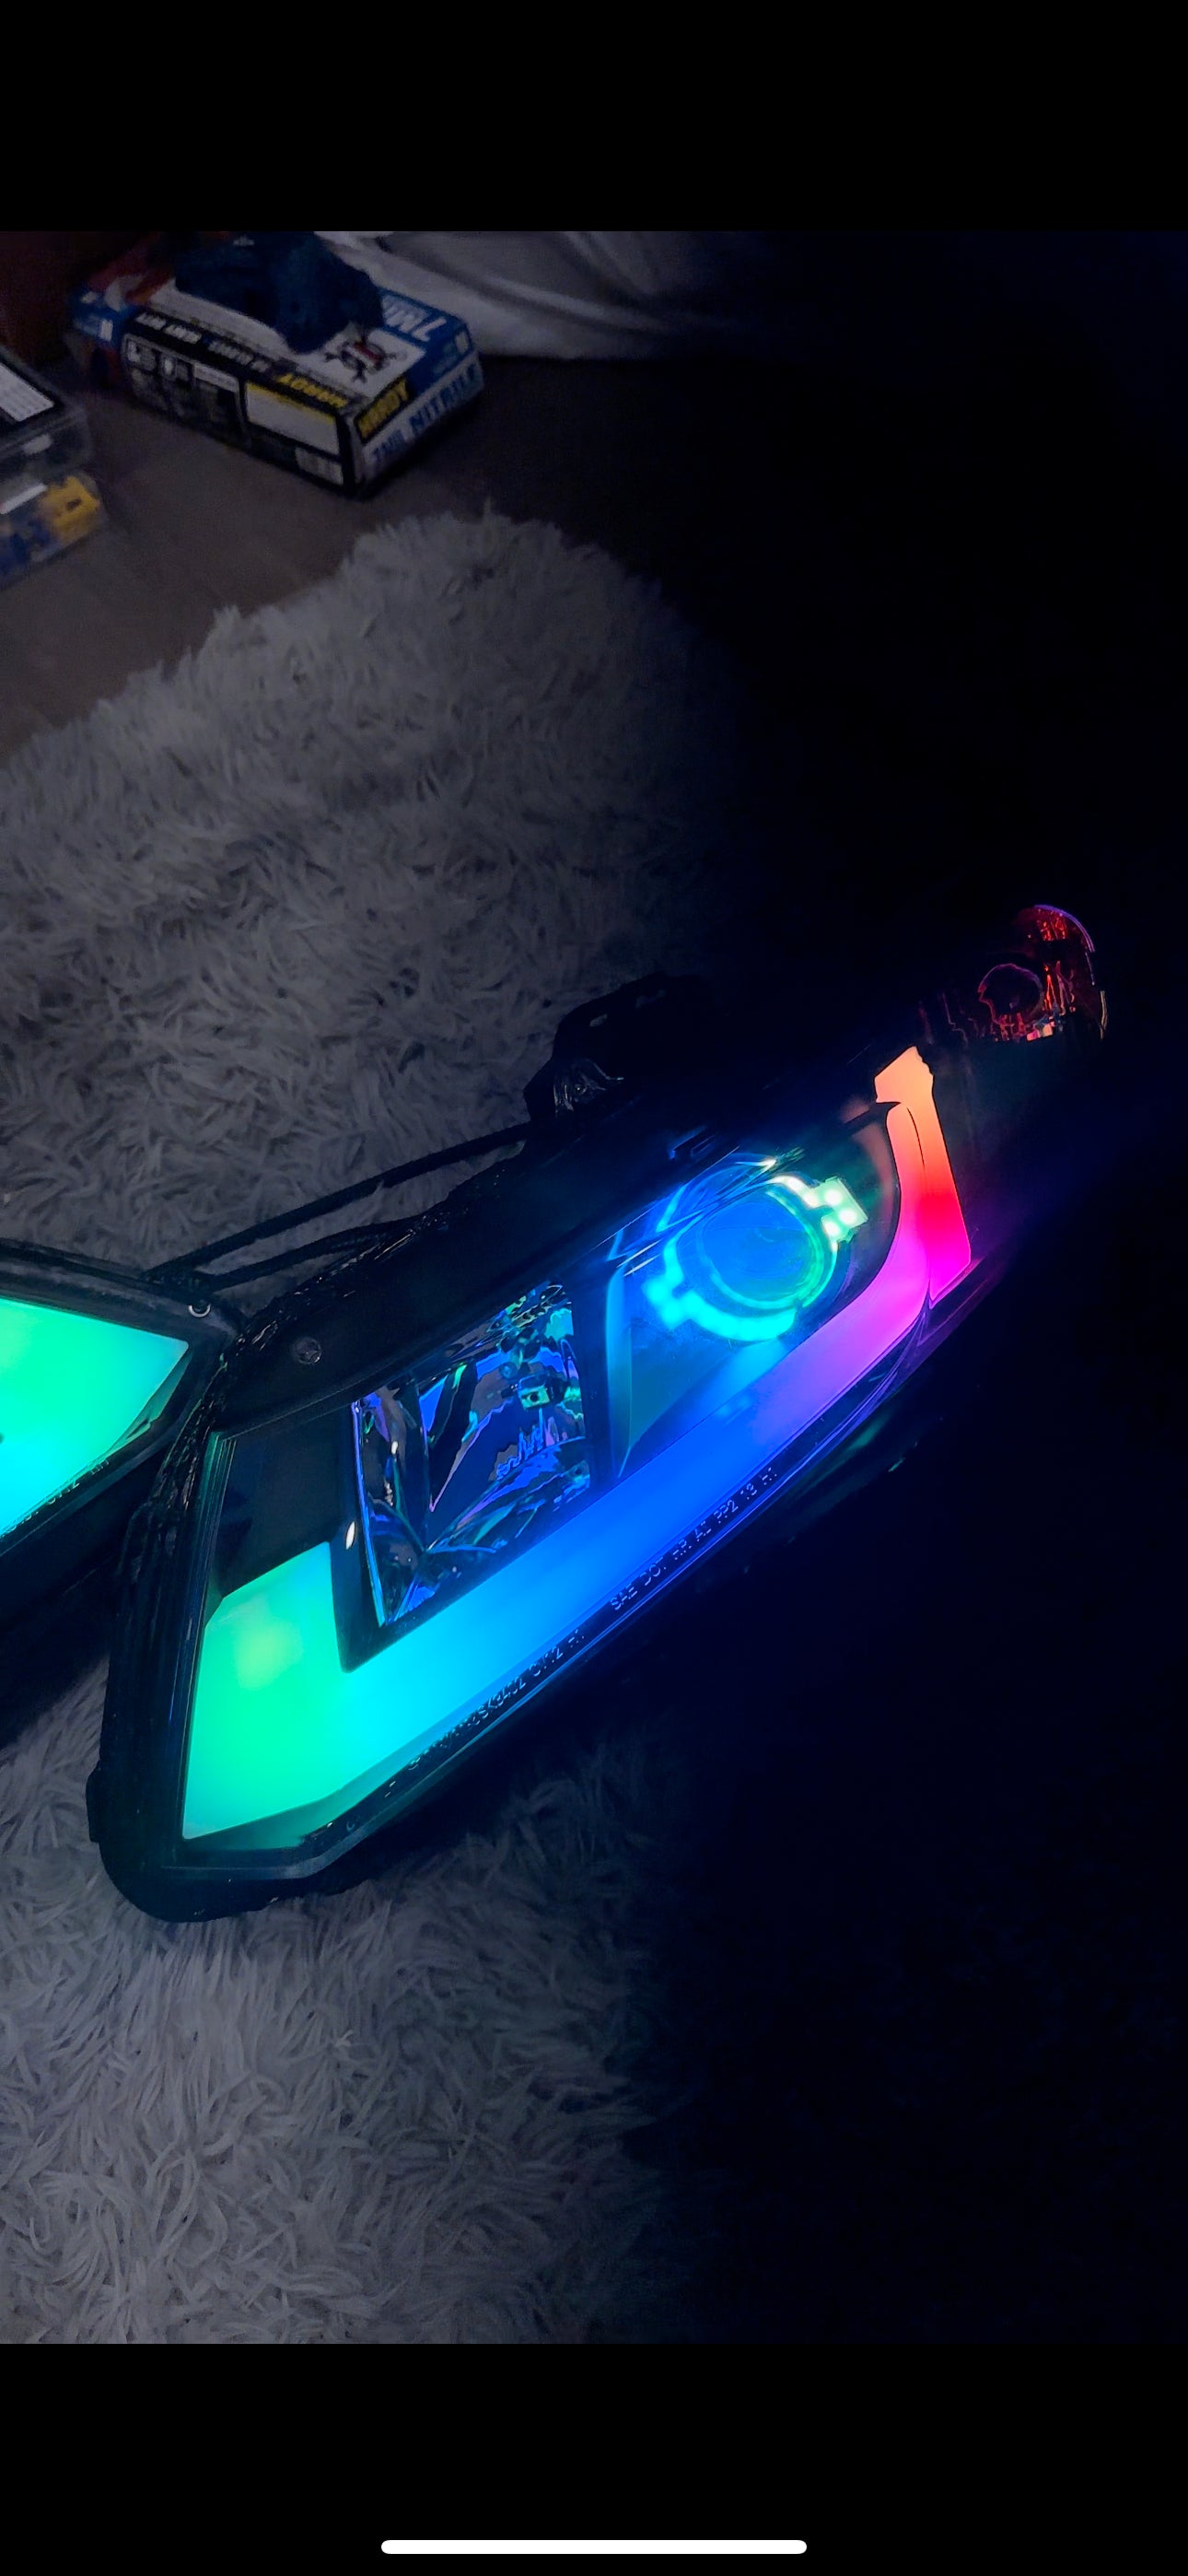 2012-2015 Civic Sedan RGB’s Headlights